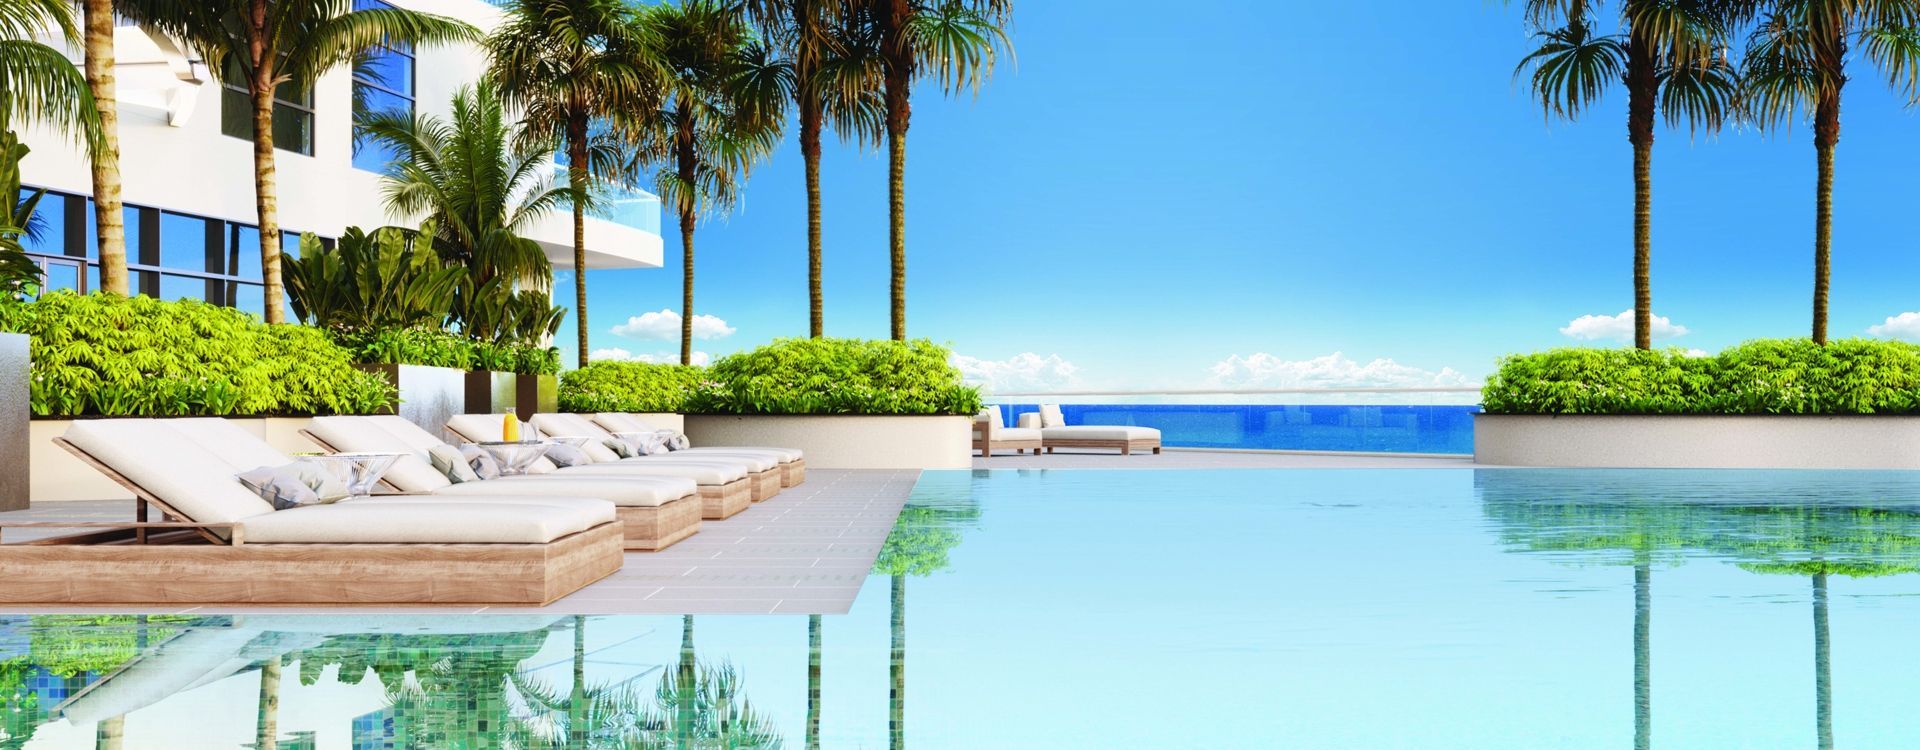 amrit-ocean-resort-pool.jpg